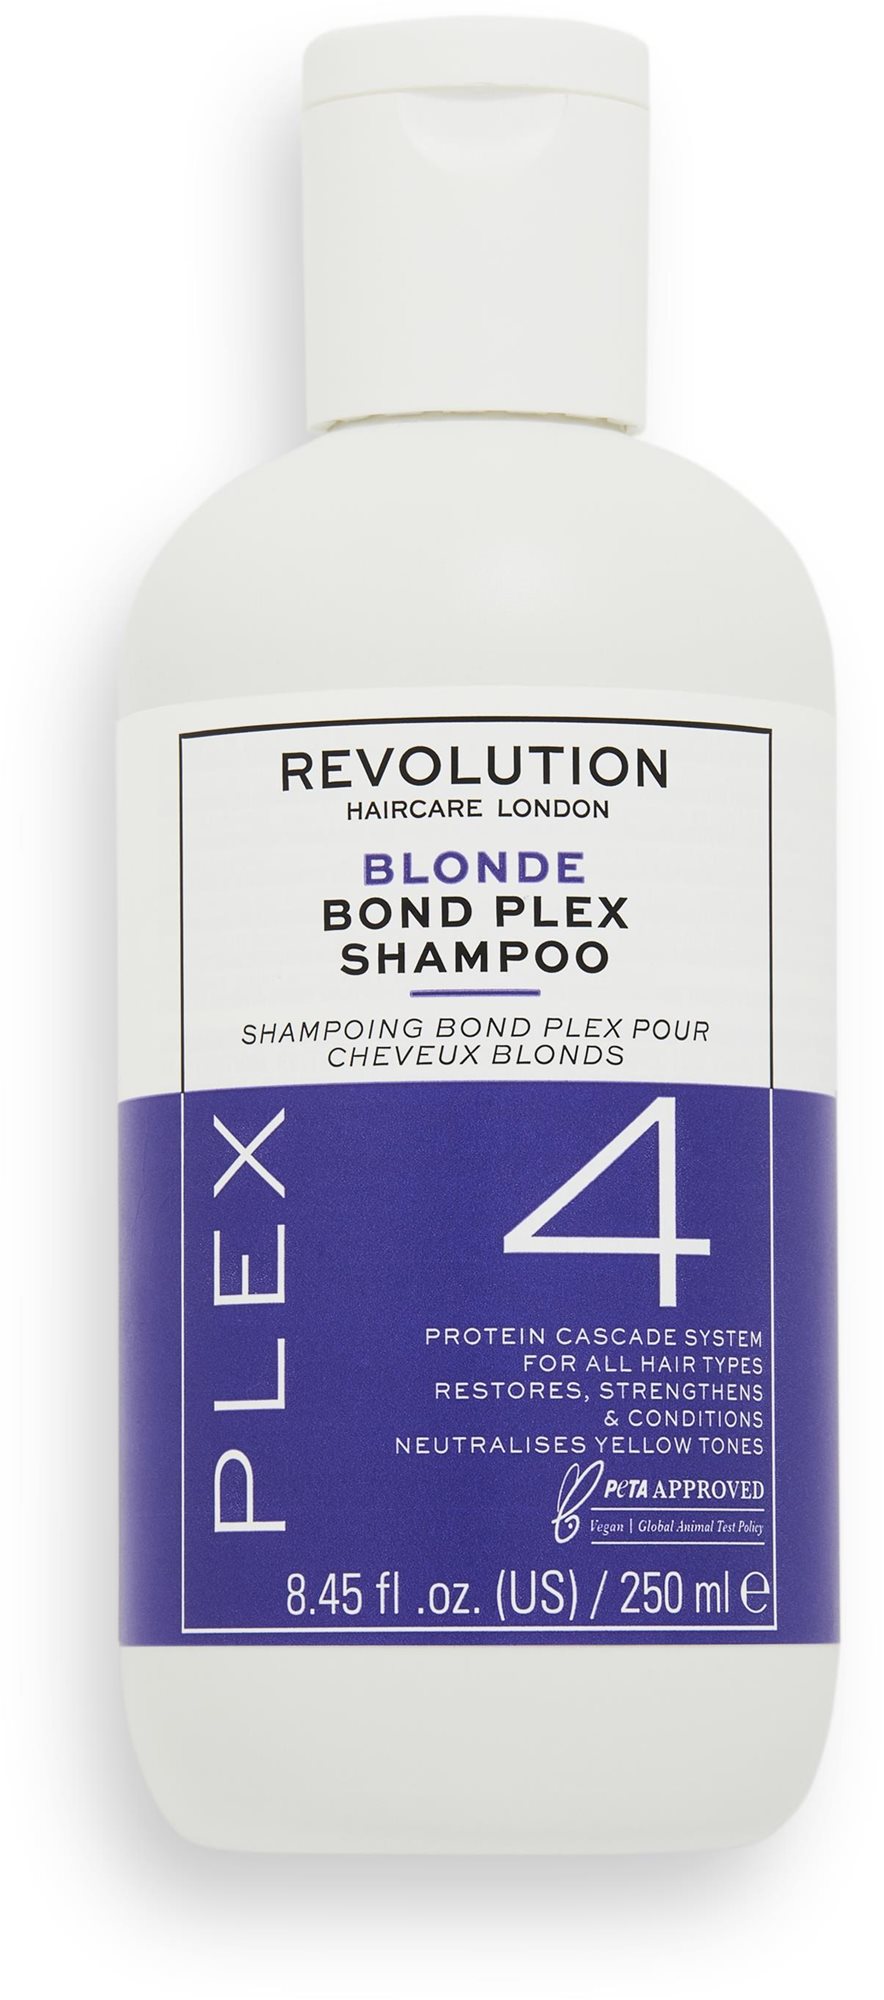 REVOLUTION HAIRCARE Blonde Plex 4 Bond Plex Shampoo 250 ml